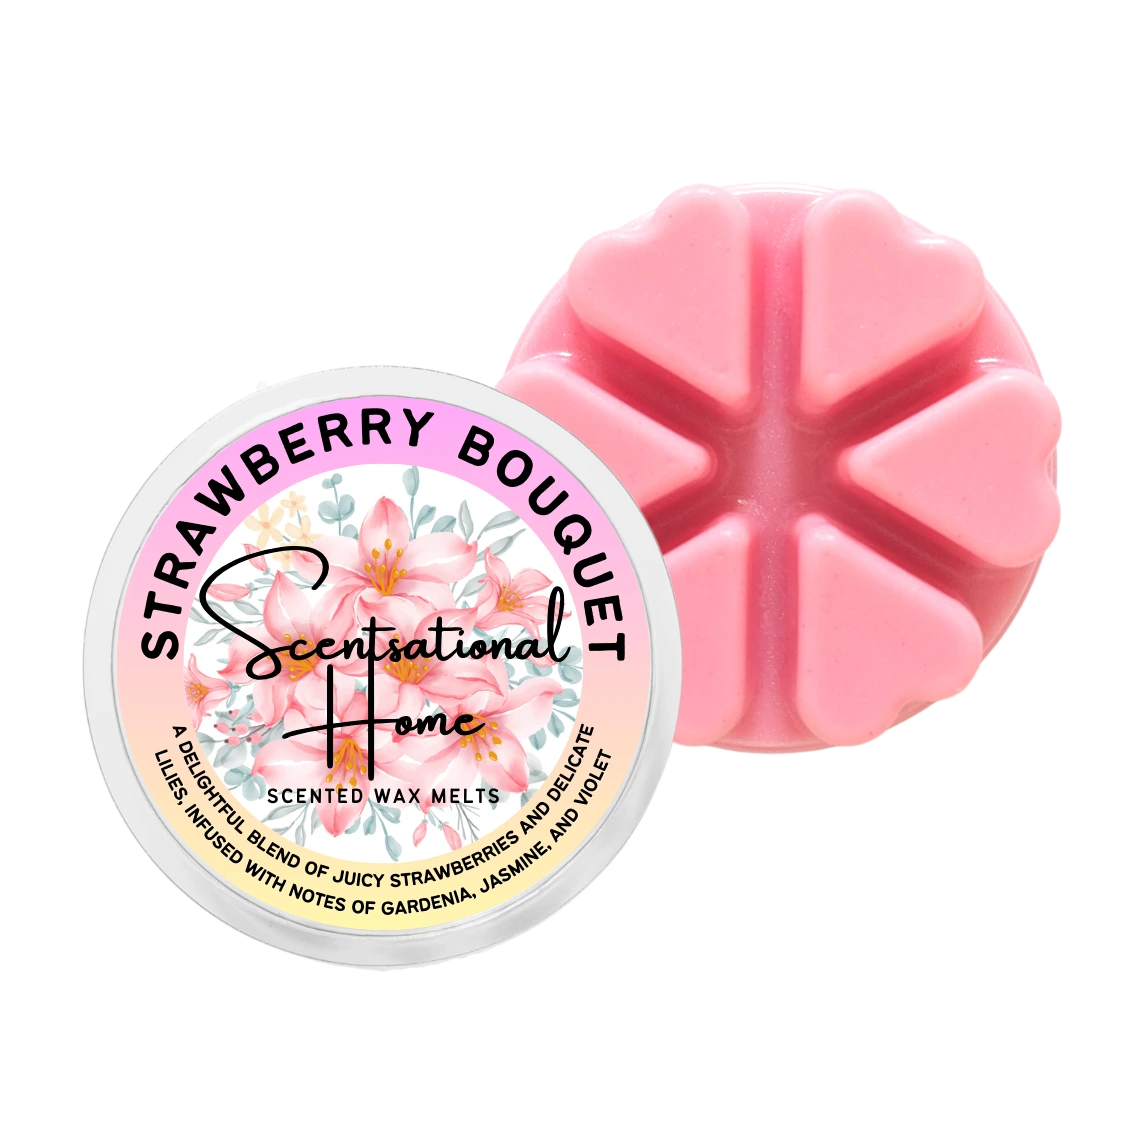 Strawberry Bouquet Wax Melt